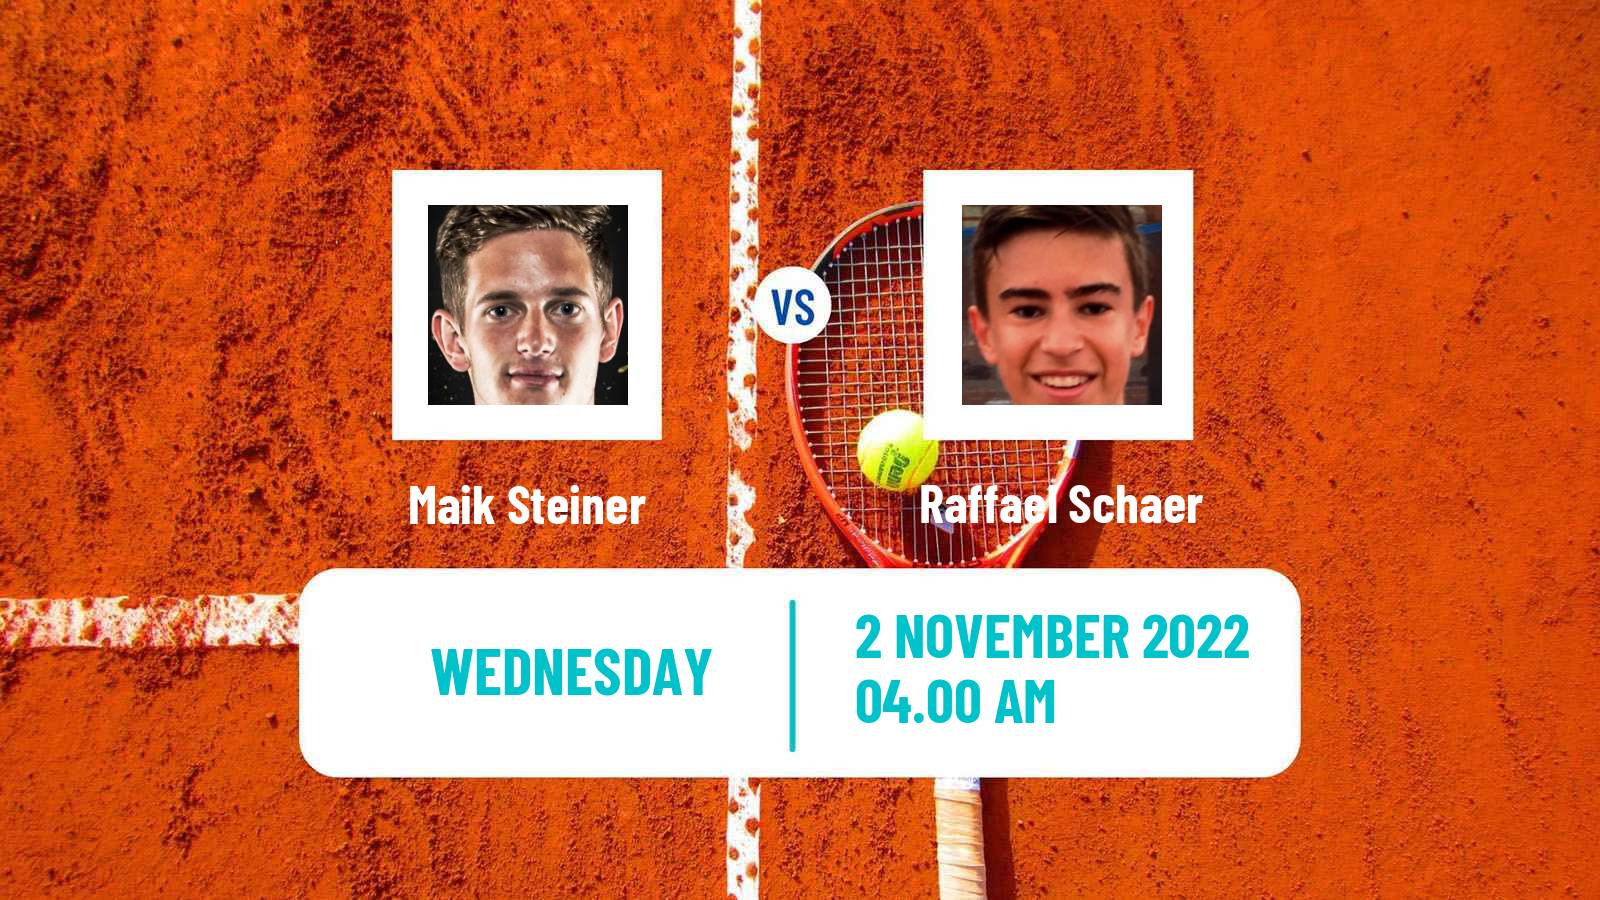 Tennis ITF Tournaments Maik Steiner - Raffael Schaer